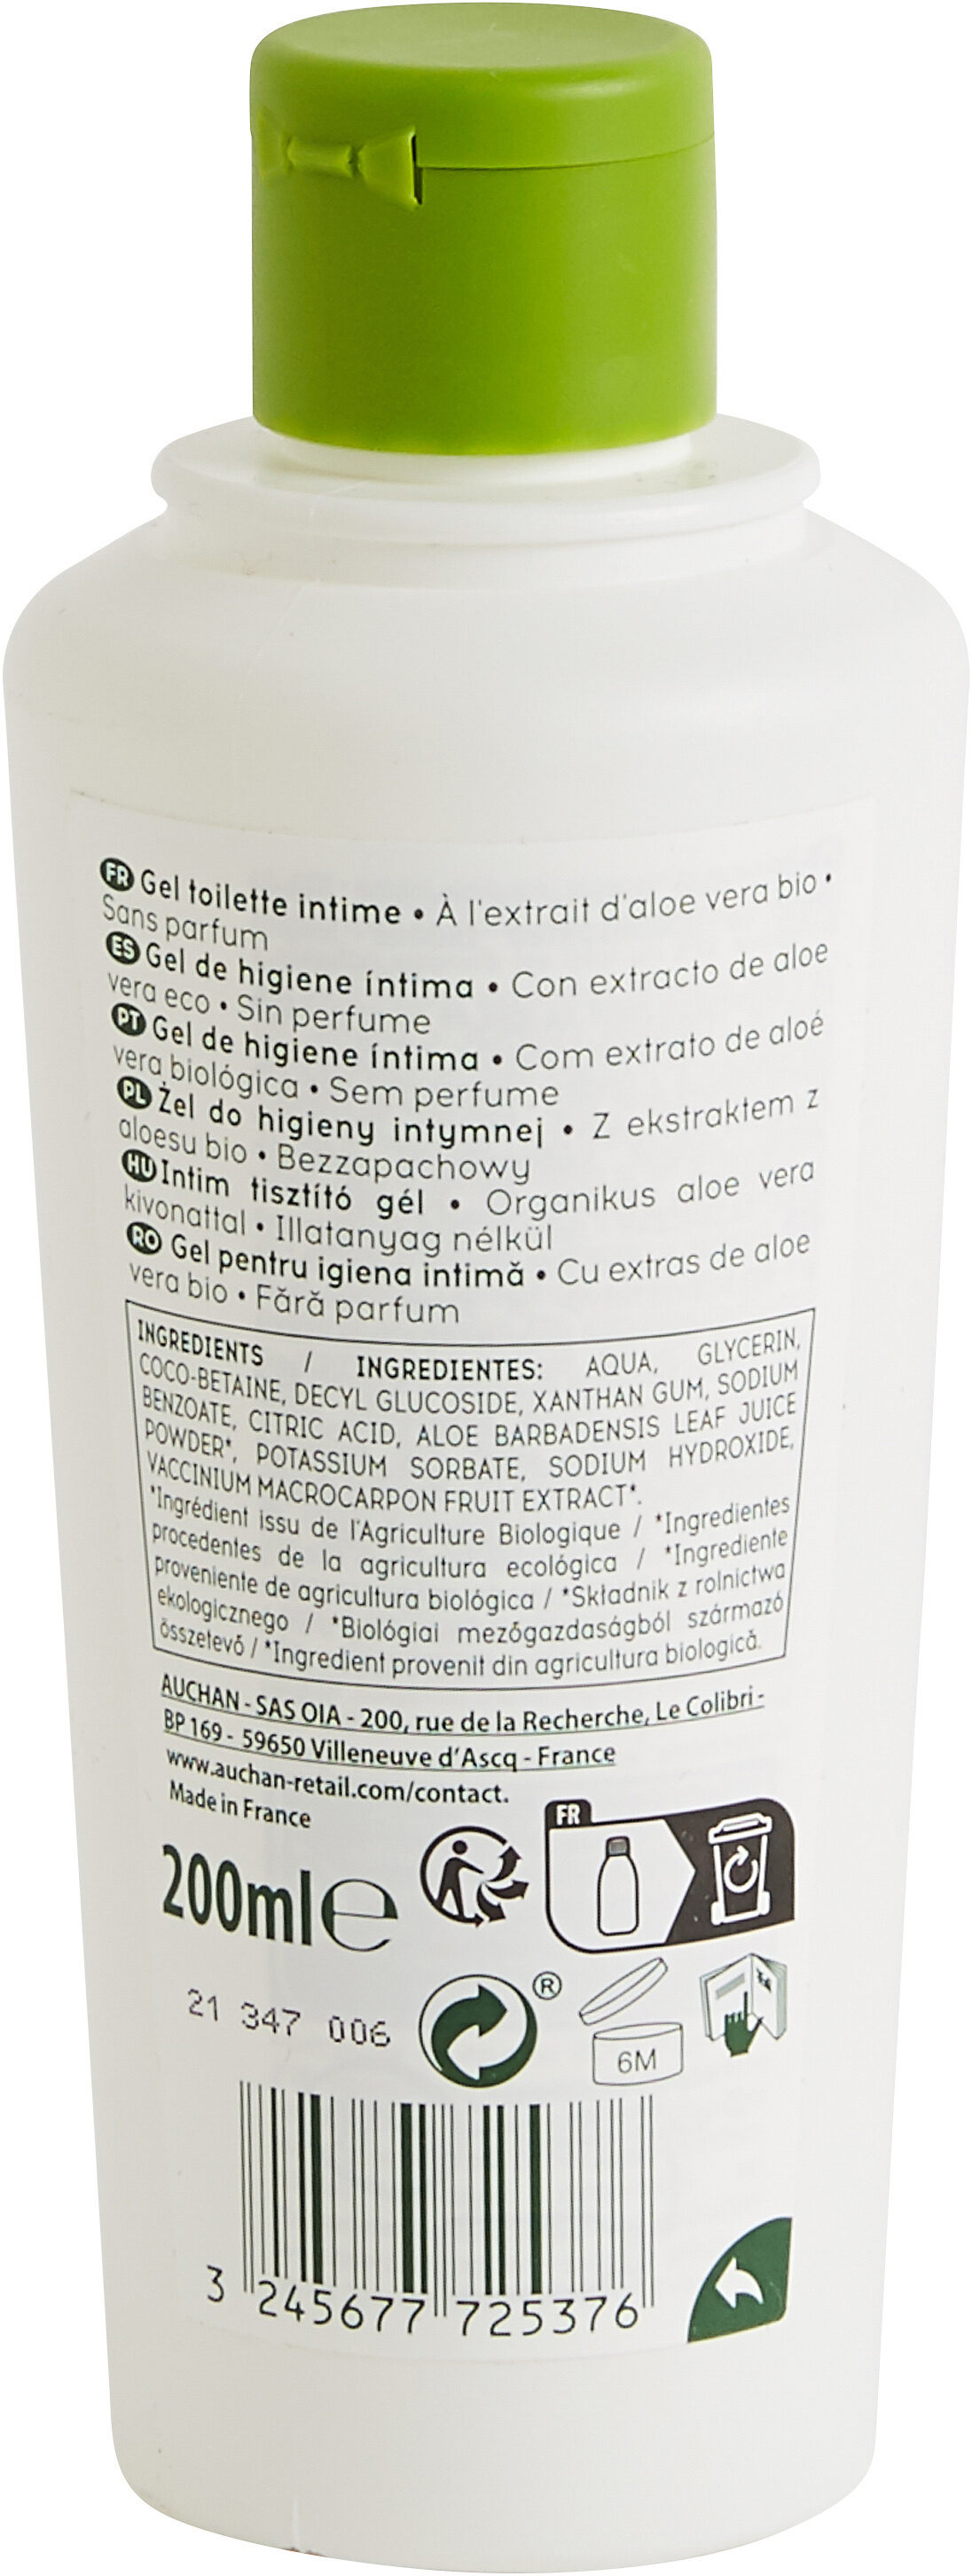 COSMIA BIO GEL TOILETTE INTIMEà l'extrait d'aloe vera biosans parfumpréserve et respecte l'équilibre intime - Produto - fr